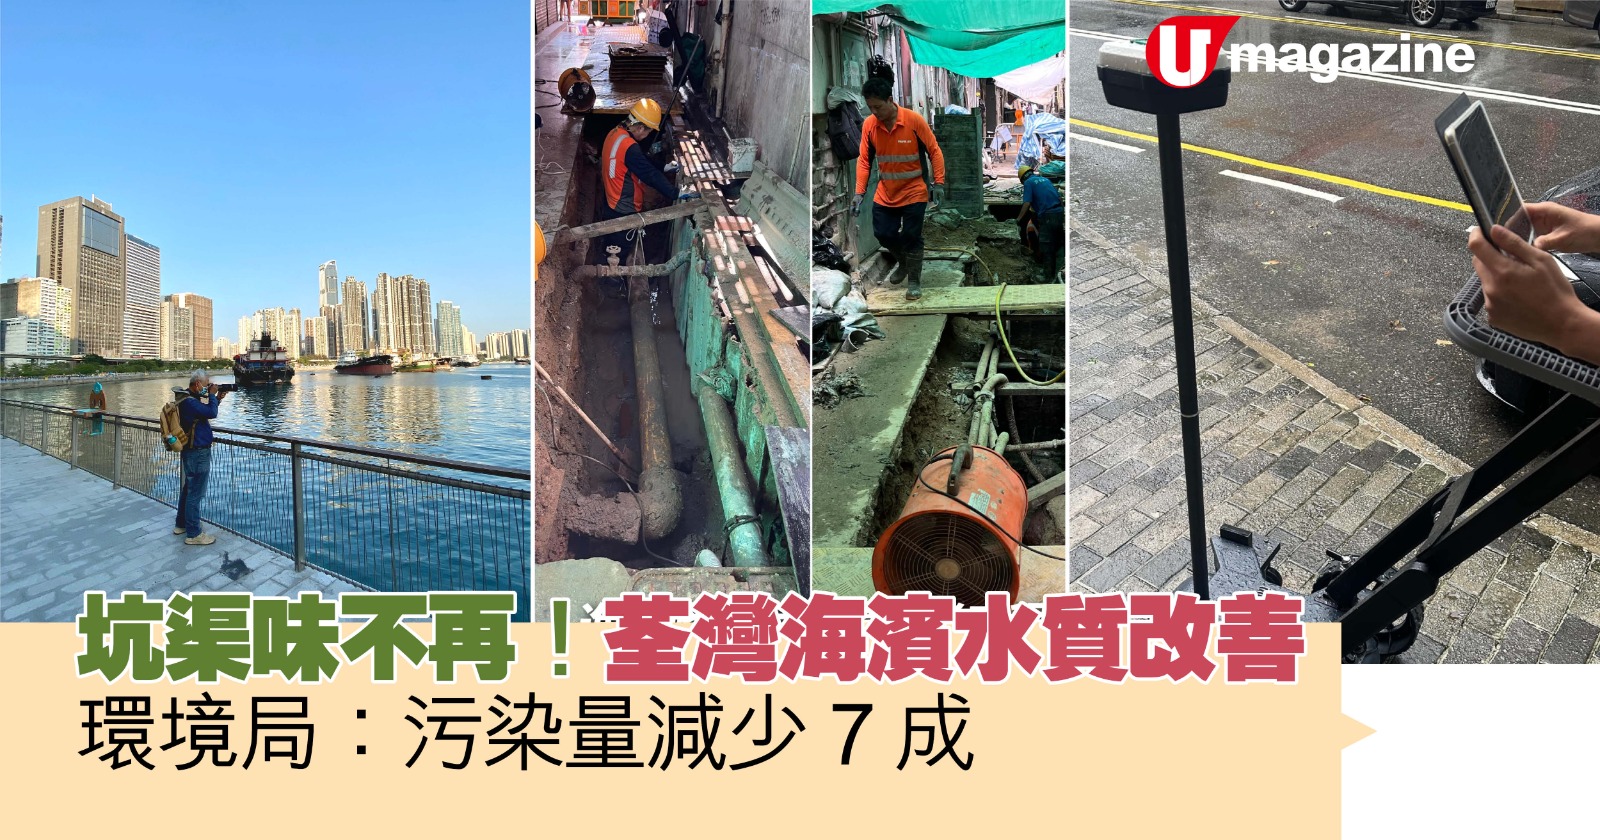 坑渠味不再！荃灣海濱水質改善  環境局：污染量減少7成